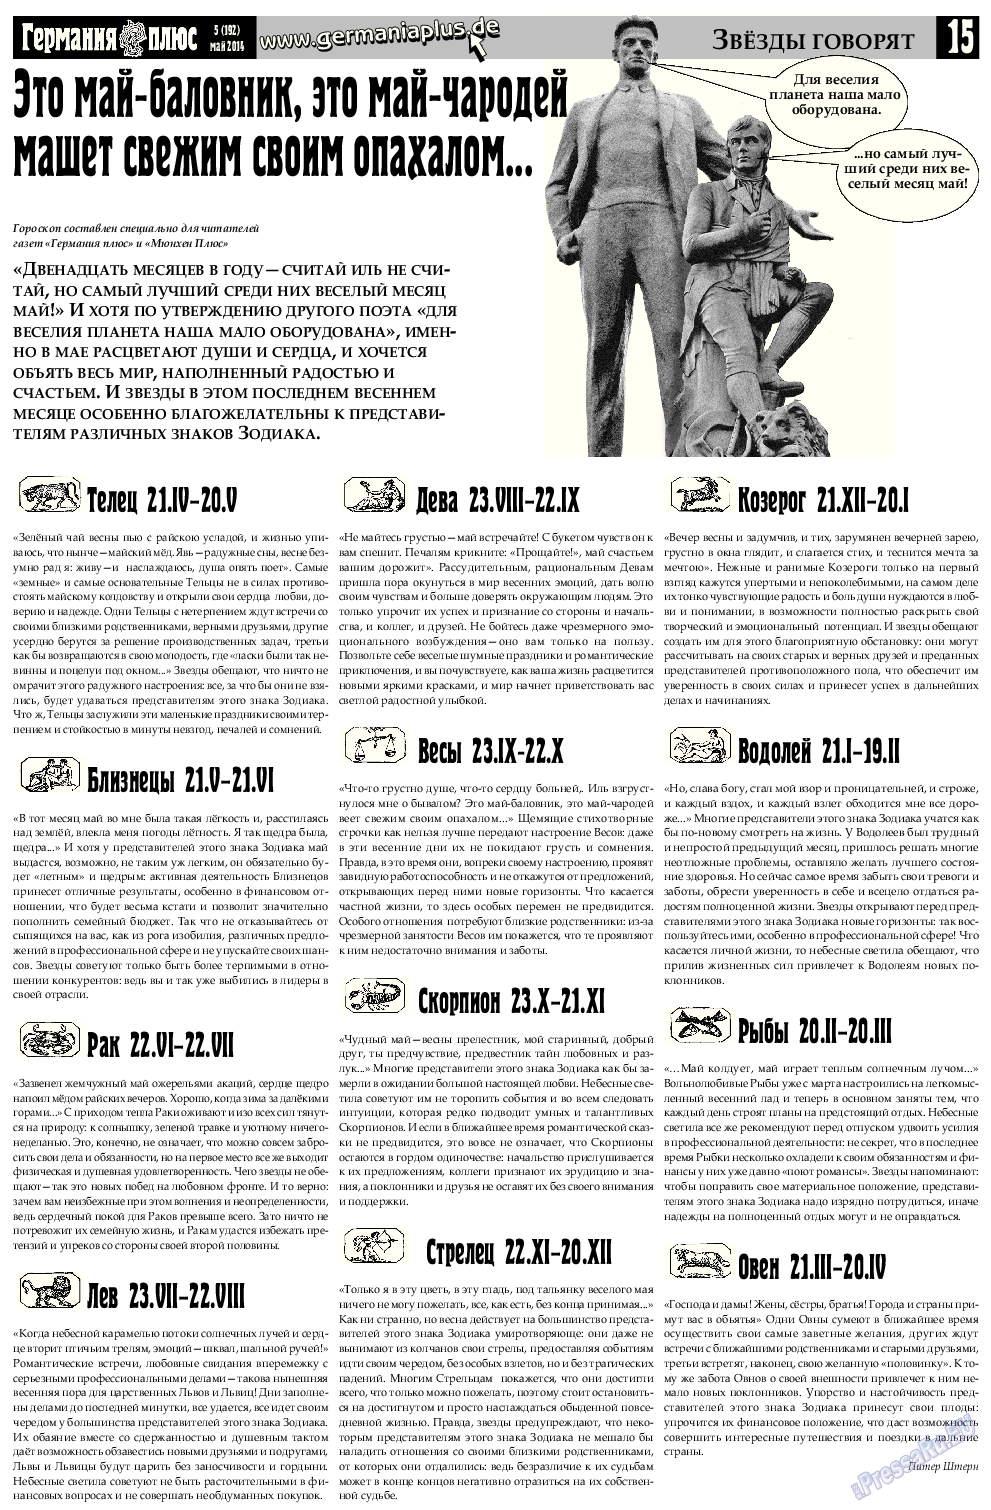 Германия плюс, газета. 2014 №5 стр.15